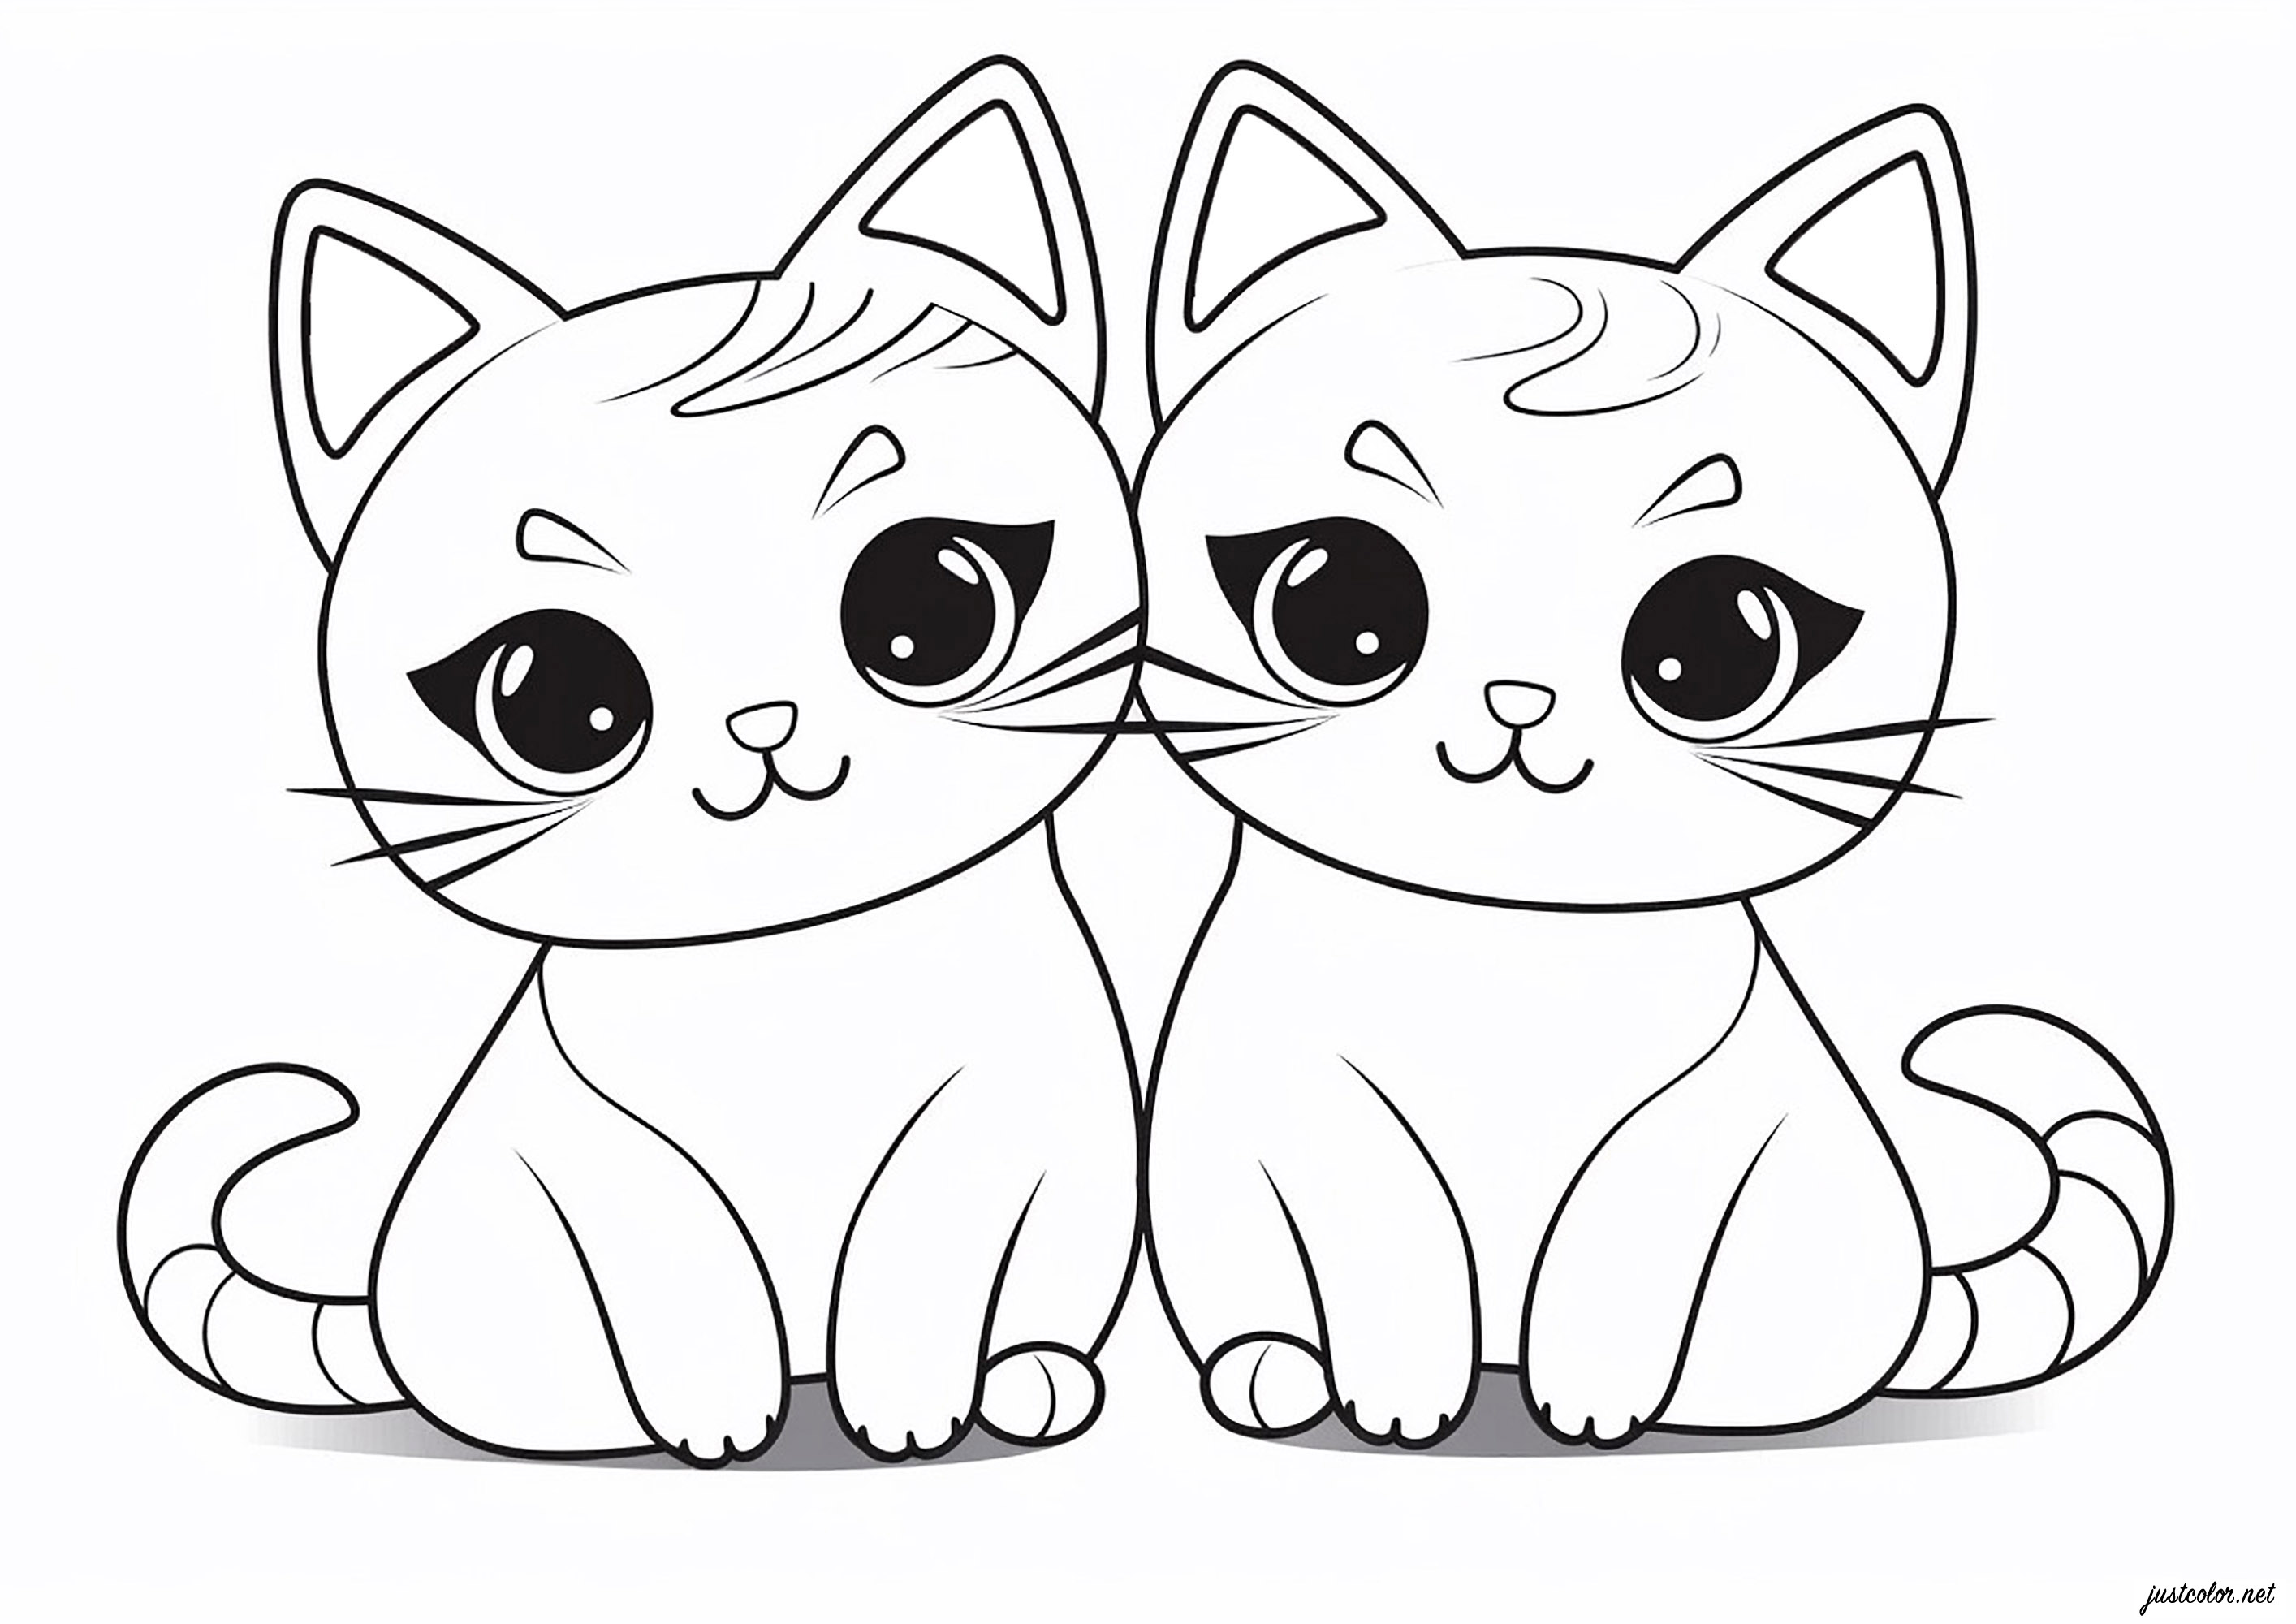 Dois Gatos desenhados num estilo Kawaii simples